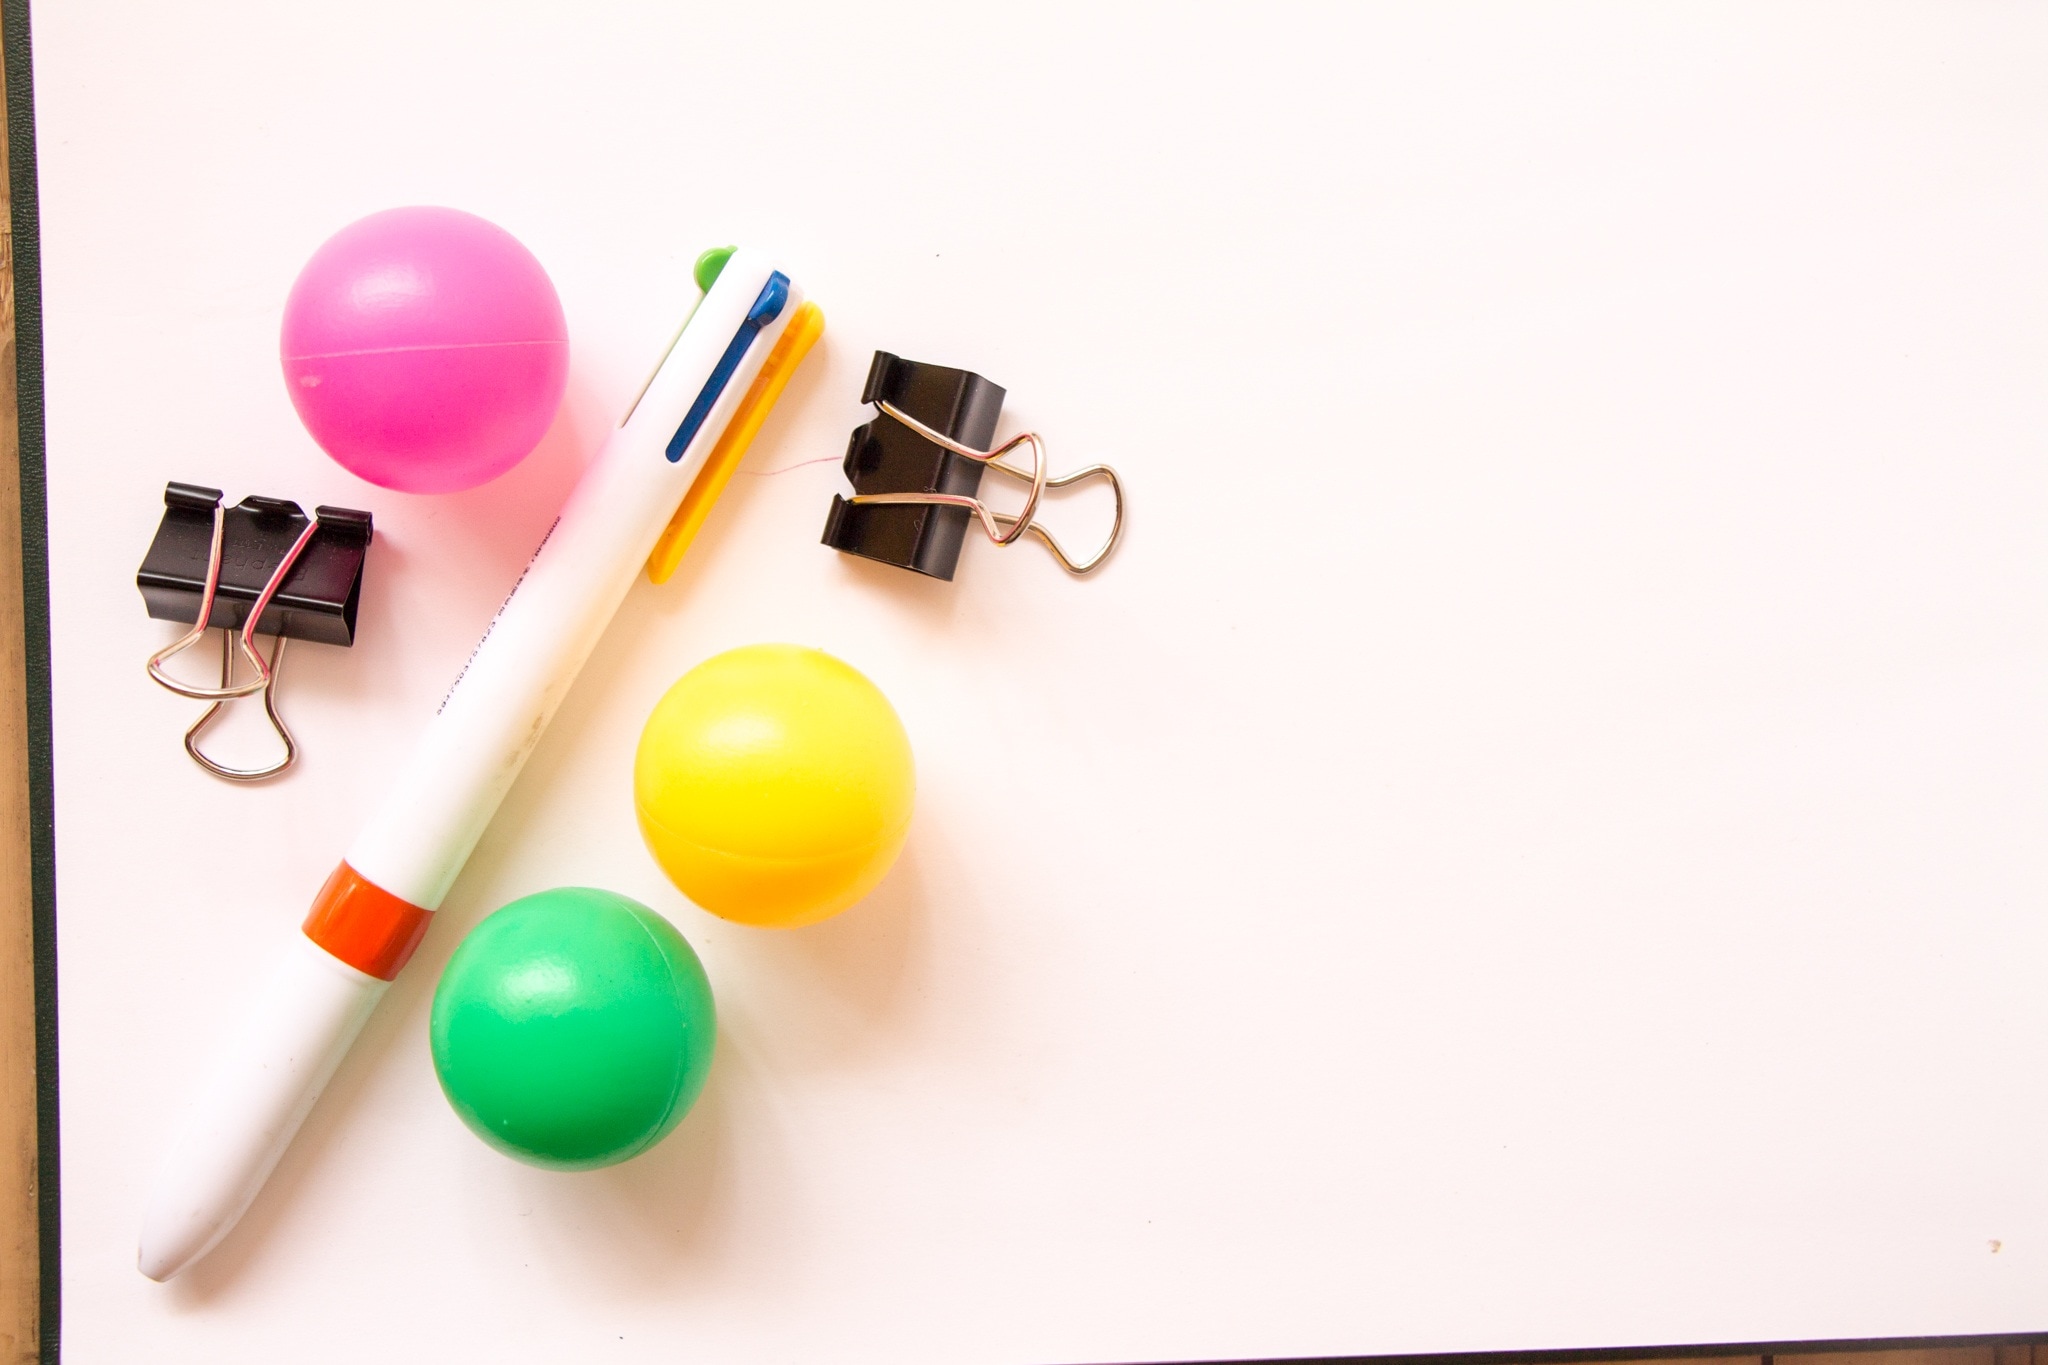 multi-colored pen and 3 plastic balls